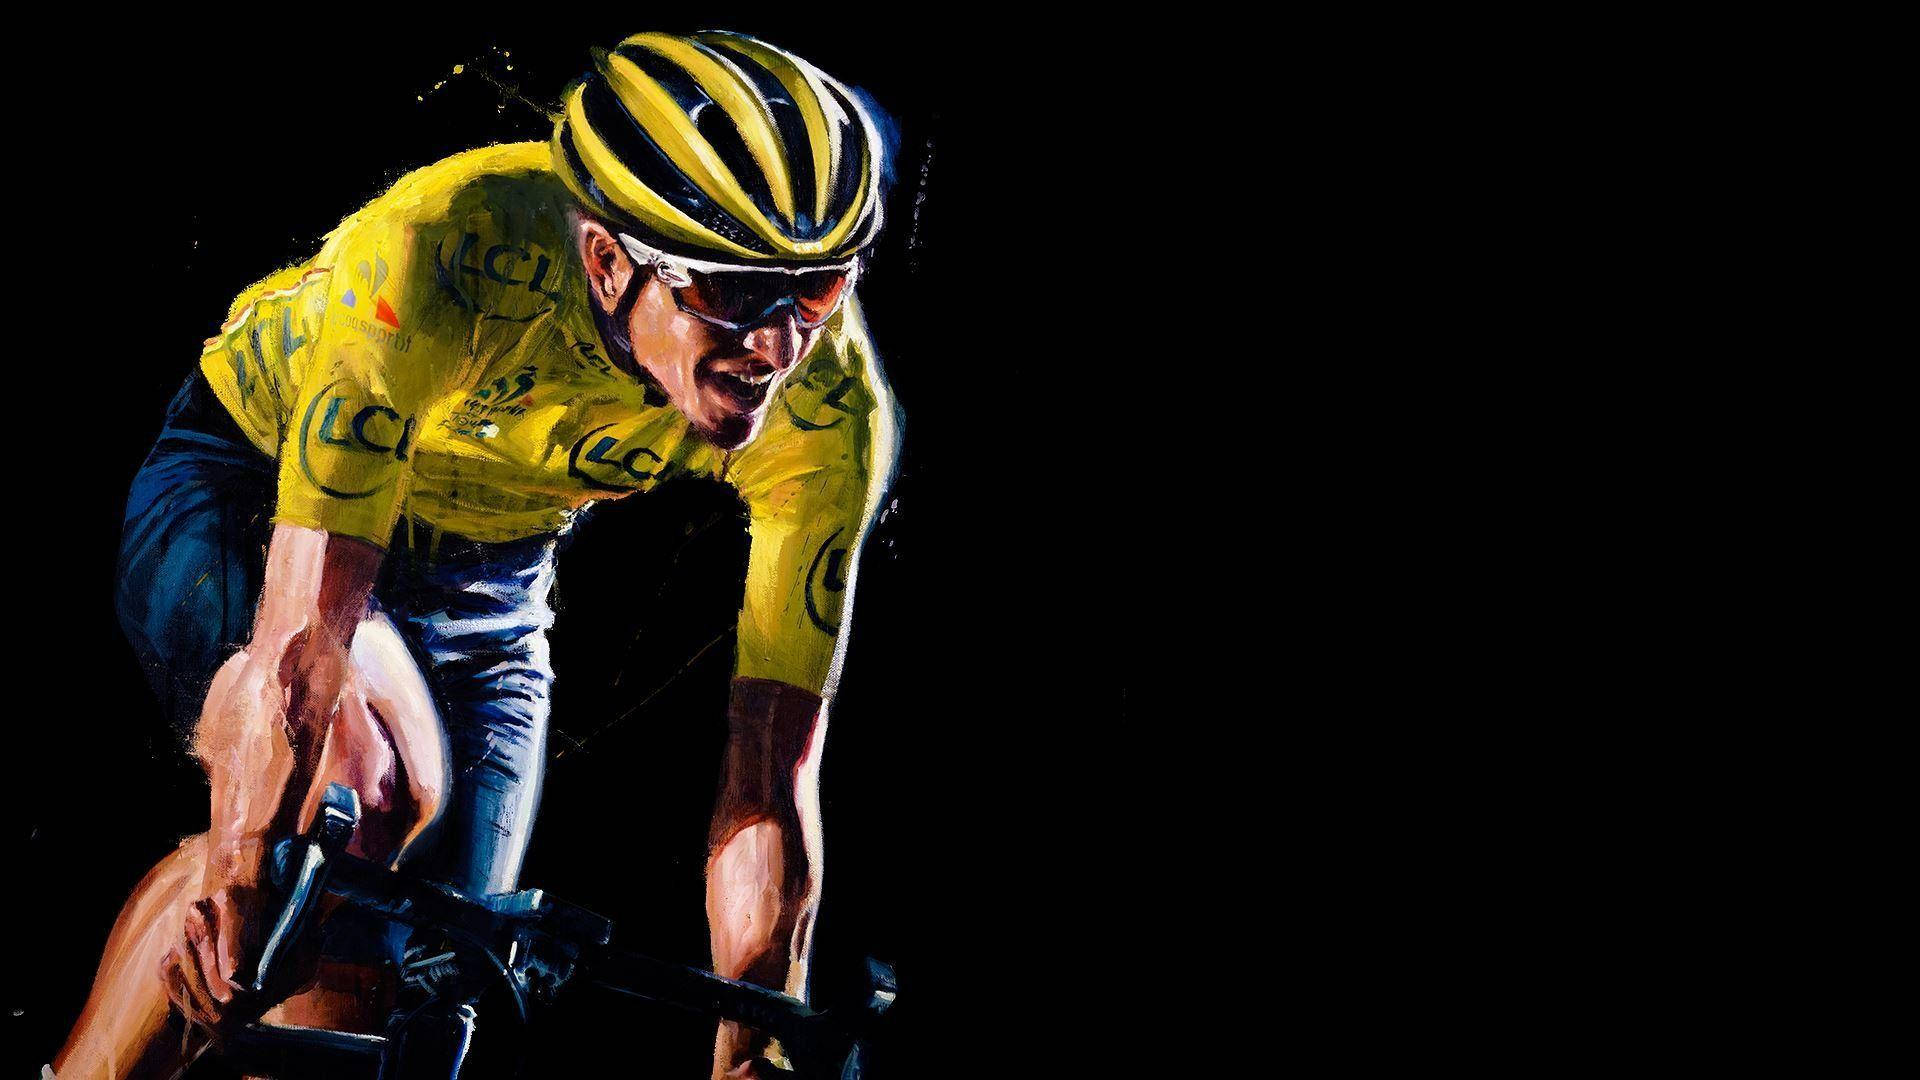 Painted Portrait Of Tour De France Biker Background